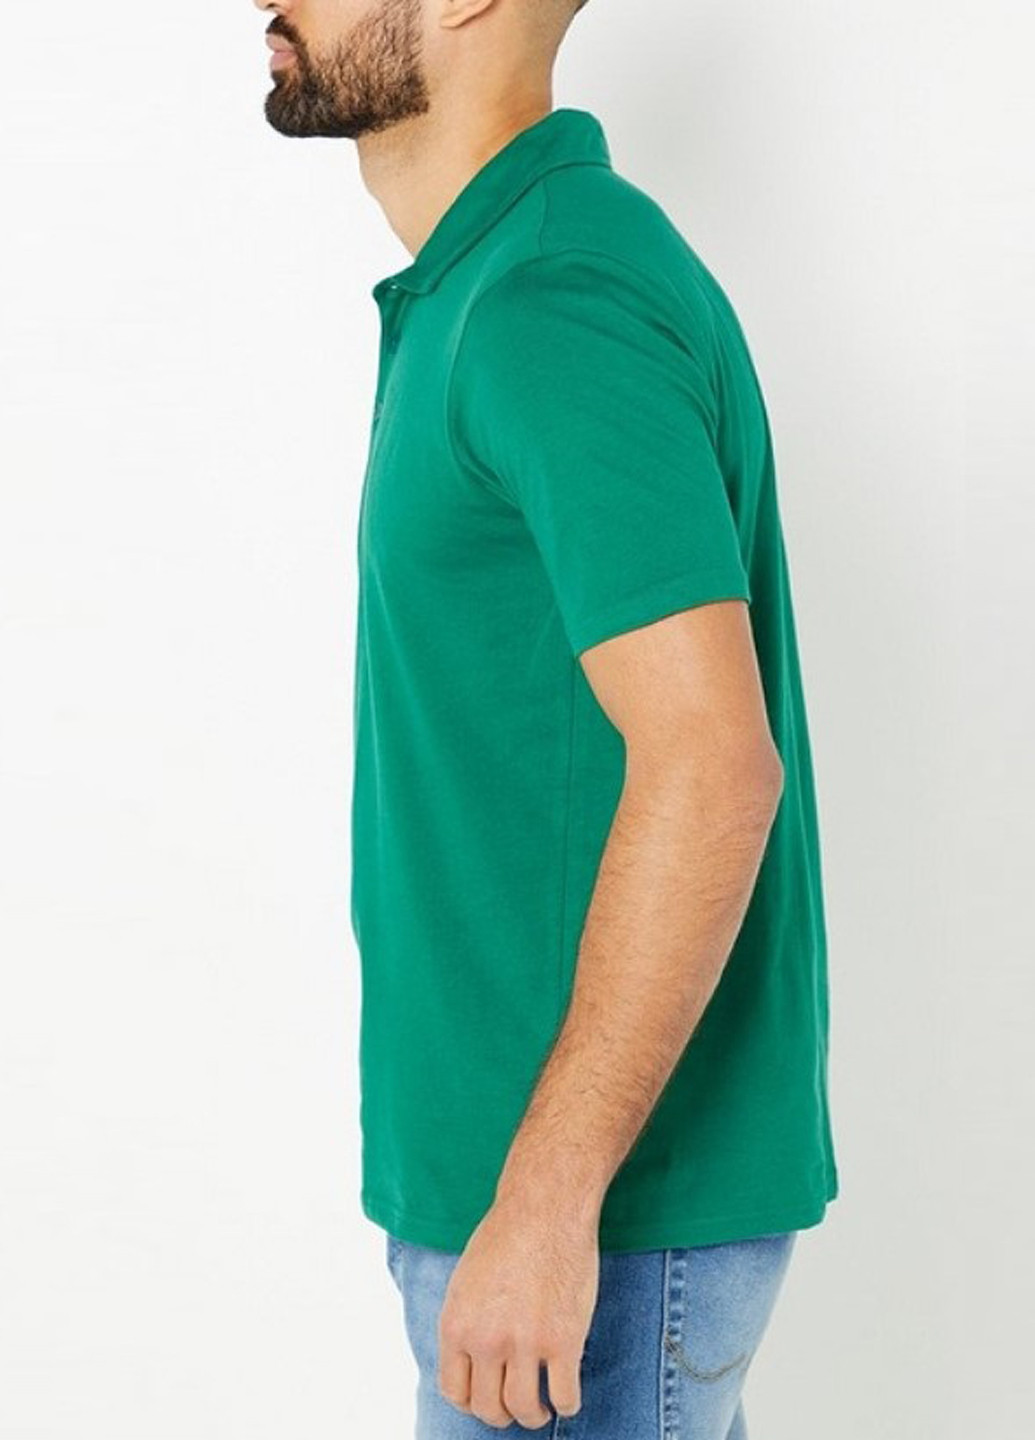 Зеленая футболка-поло для мужчин Studio однотонная